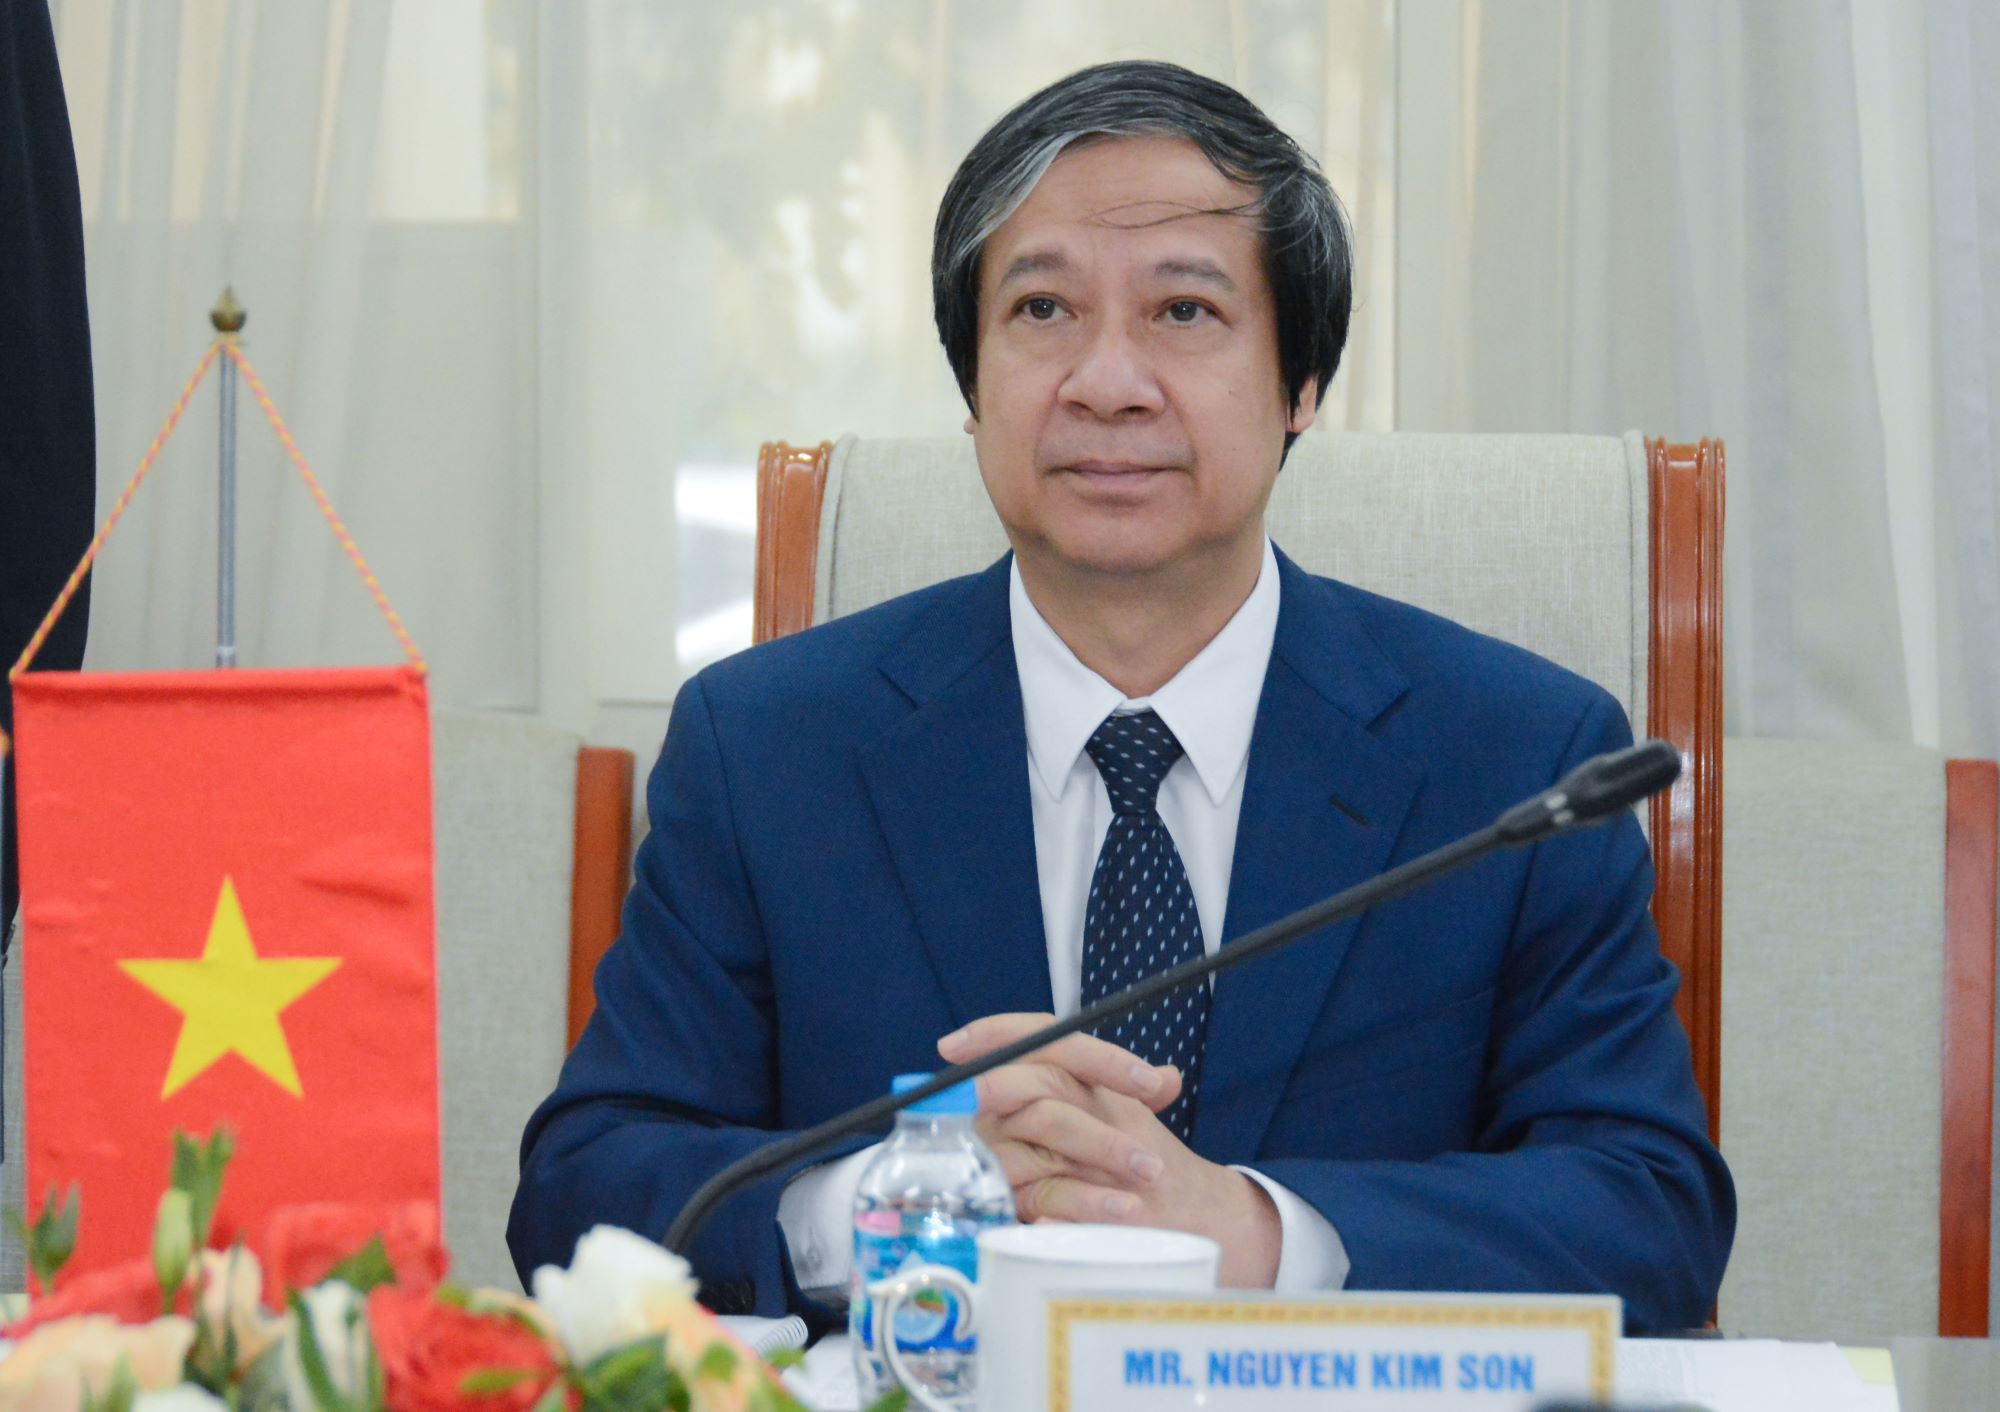 Bộ trưởng Nguyễn Kim Sơn tiếp Chủ tịch Đảng Dân chủ lập hiến Nhật Bản  ảnh 1